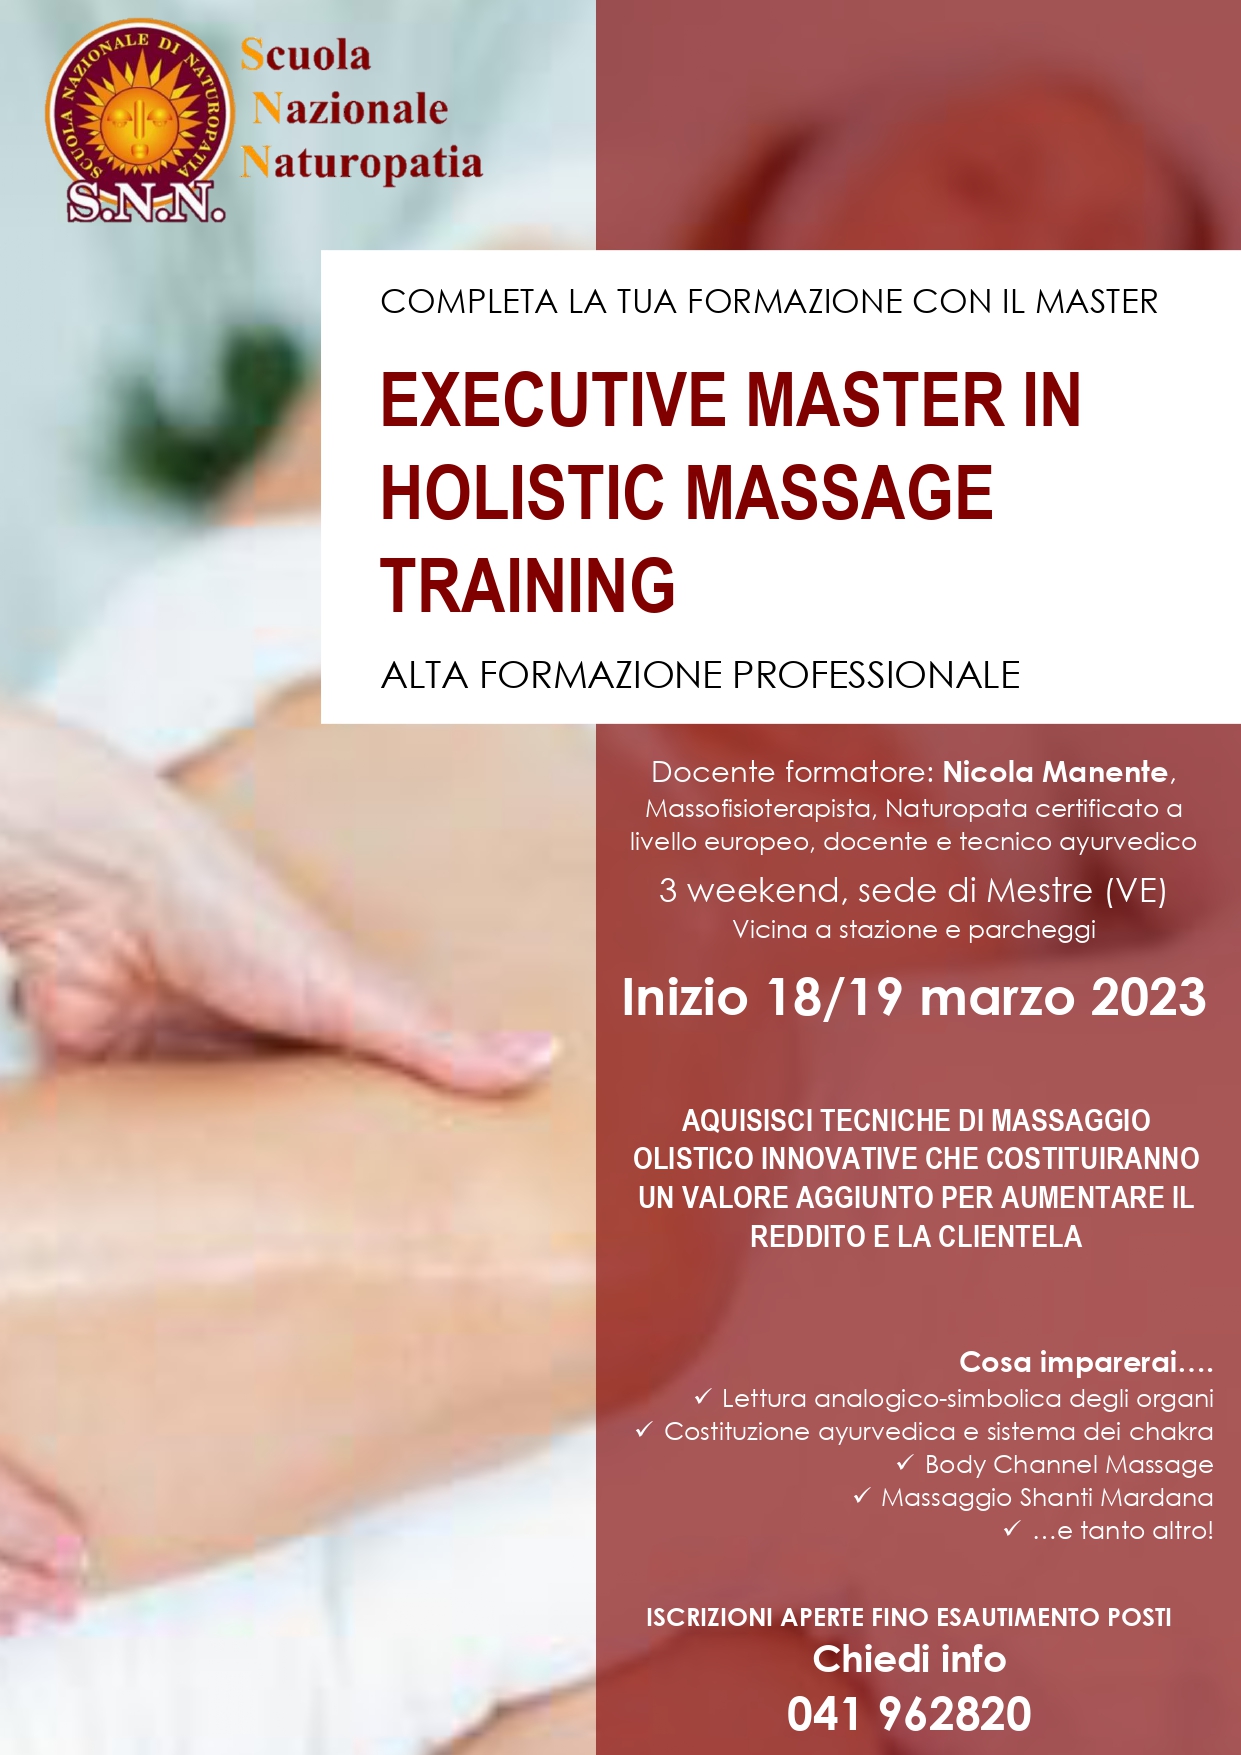 Scegli l'alta formazione professionale, acquisisci tecniche di massaggio innovative!